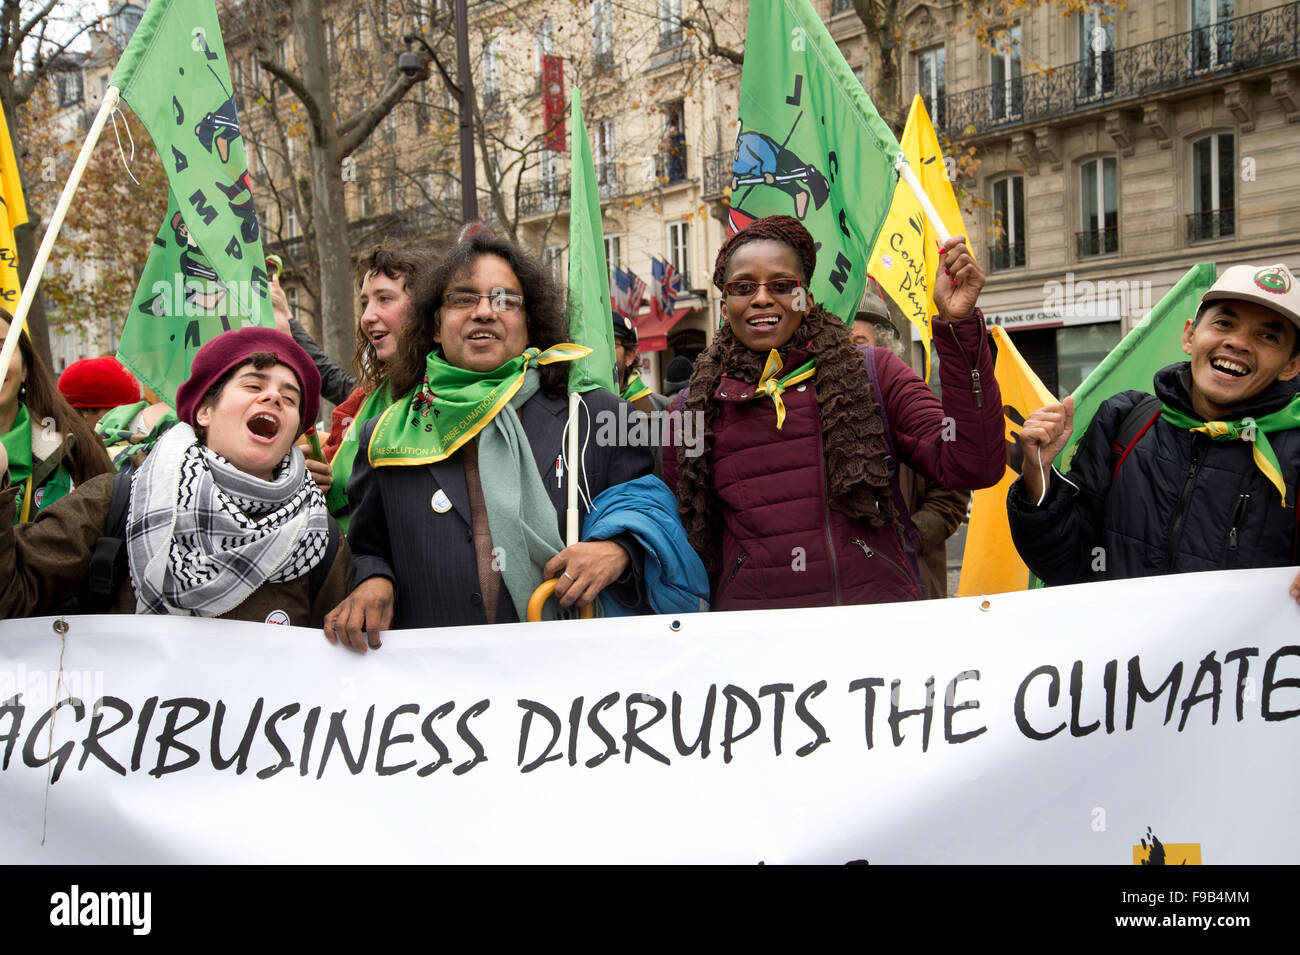 COP 21 CONFÉRENCE DES NATIONS UNIES SUR LE CLIMAT. Un groupe international d'activistes avec une bannière disant 'Beauté perturbe le climat'. Banque D'Images